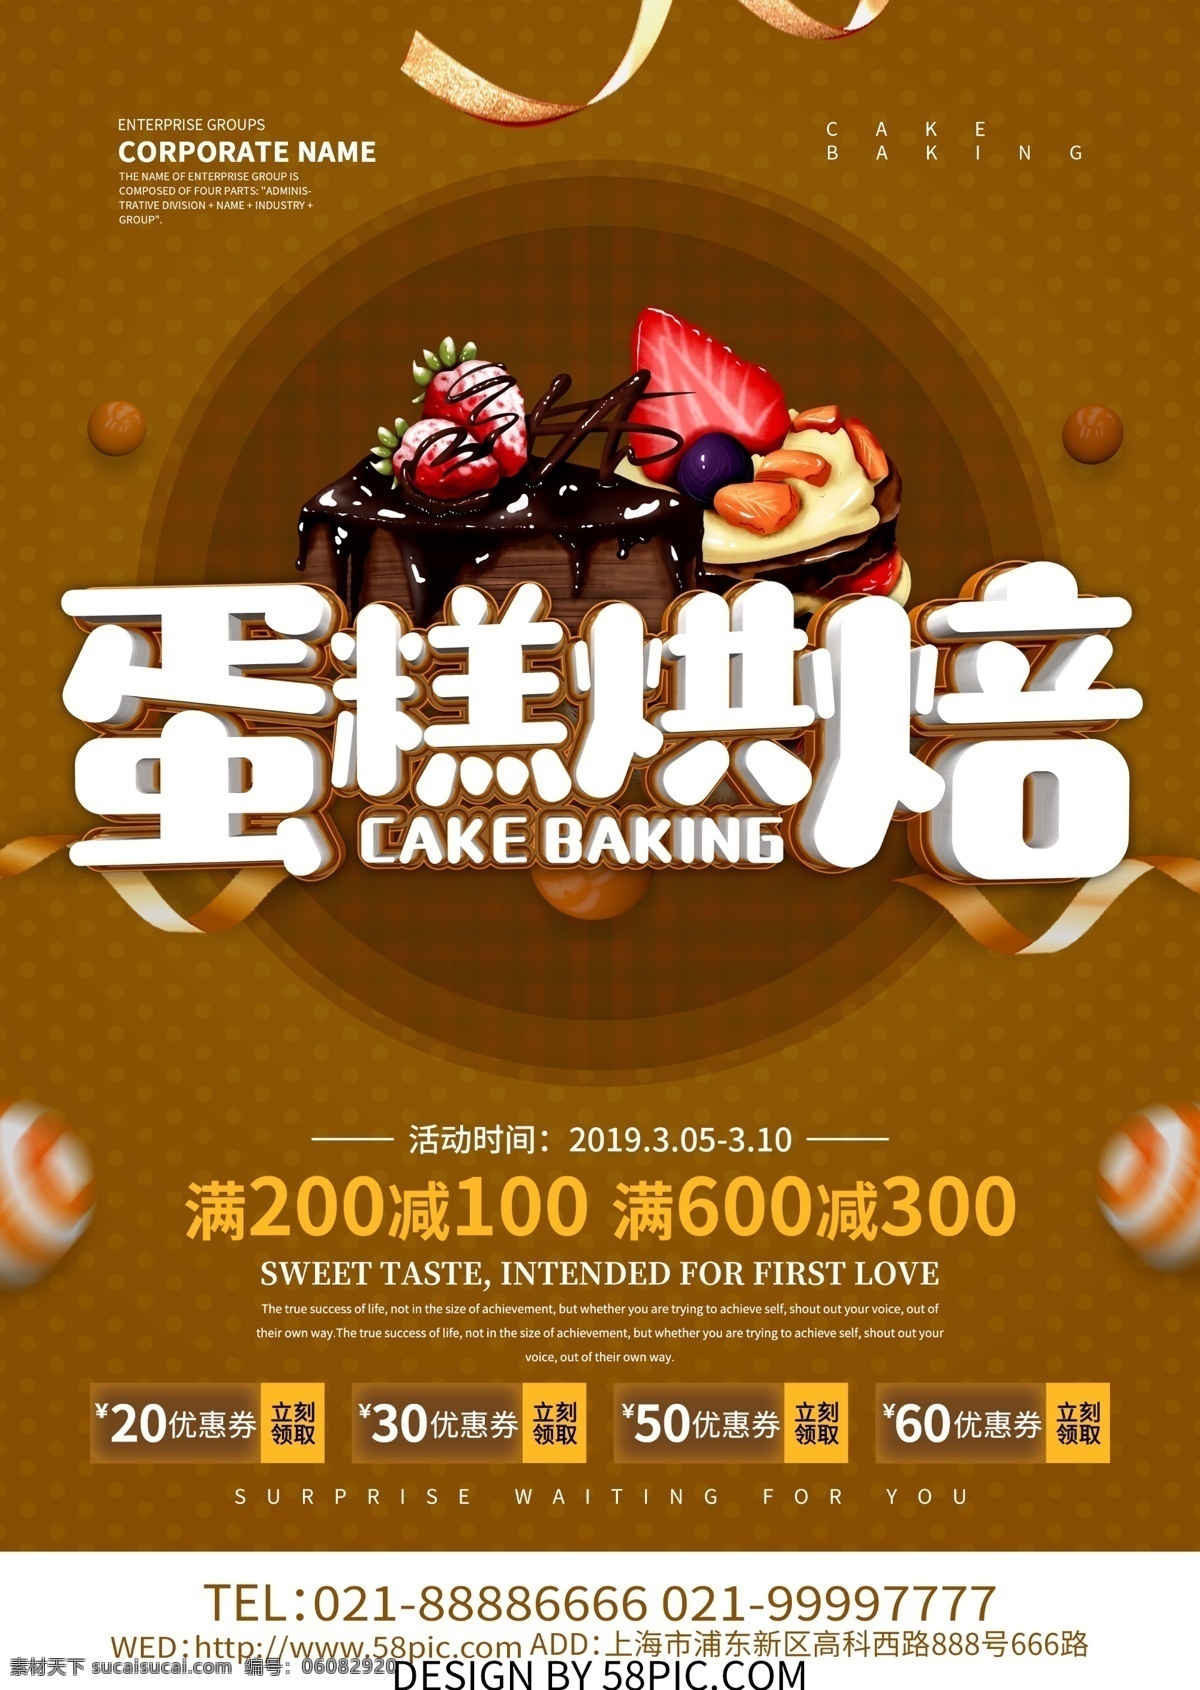 蛋糕 烘焙 促销 宣传单 蛋糕烘焙 甜点 甜品 烘焙宣传单 烘焙dm单 烘焙海报 烘焙促销海报